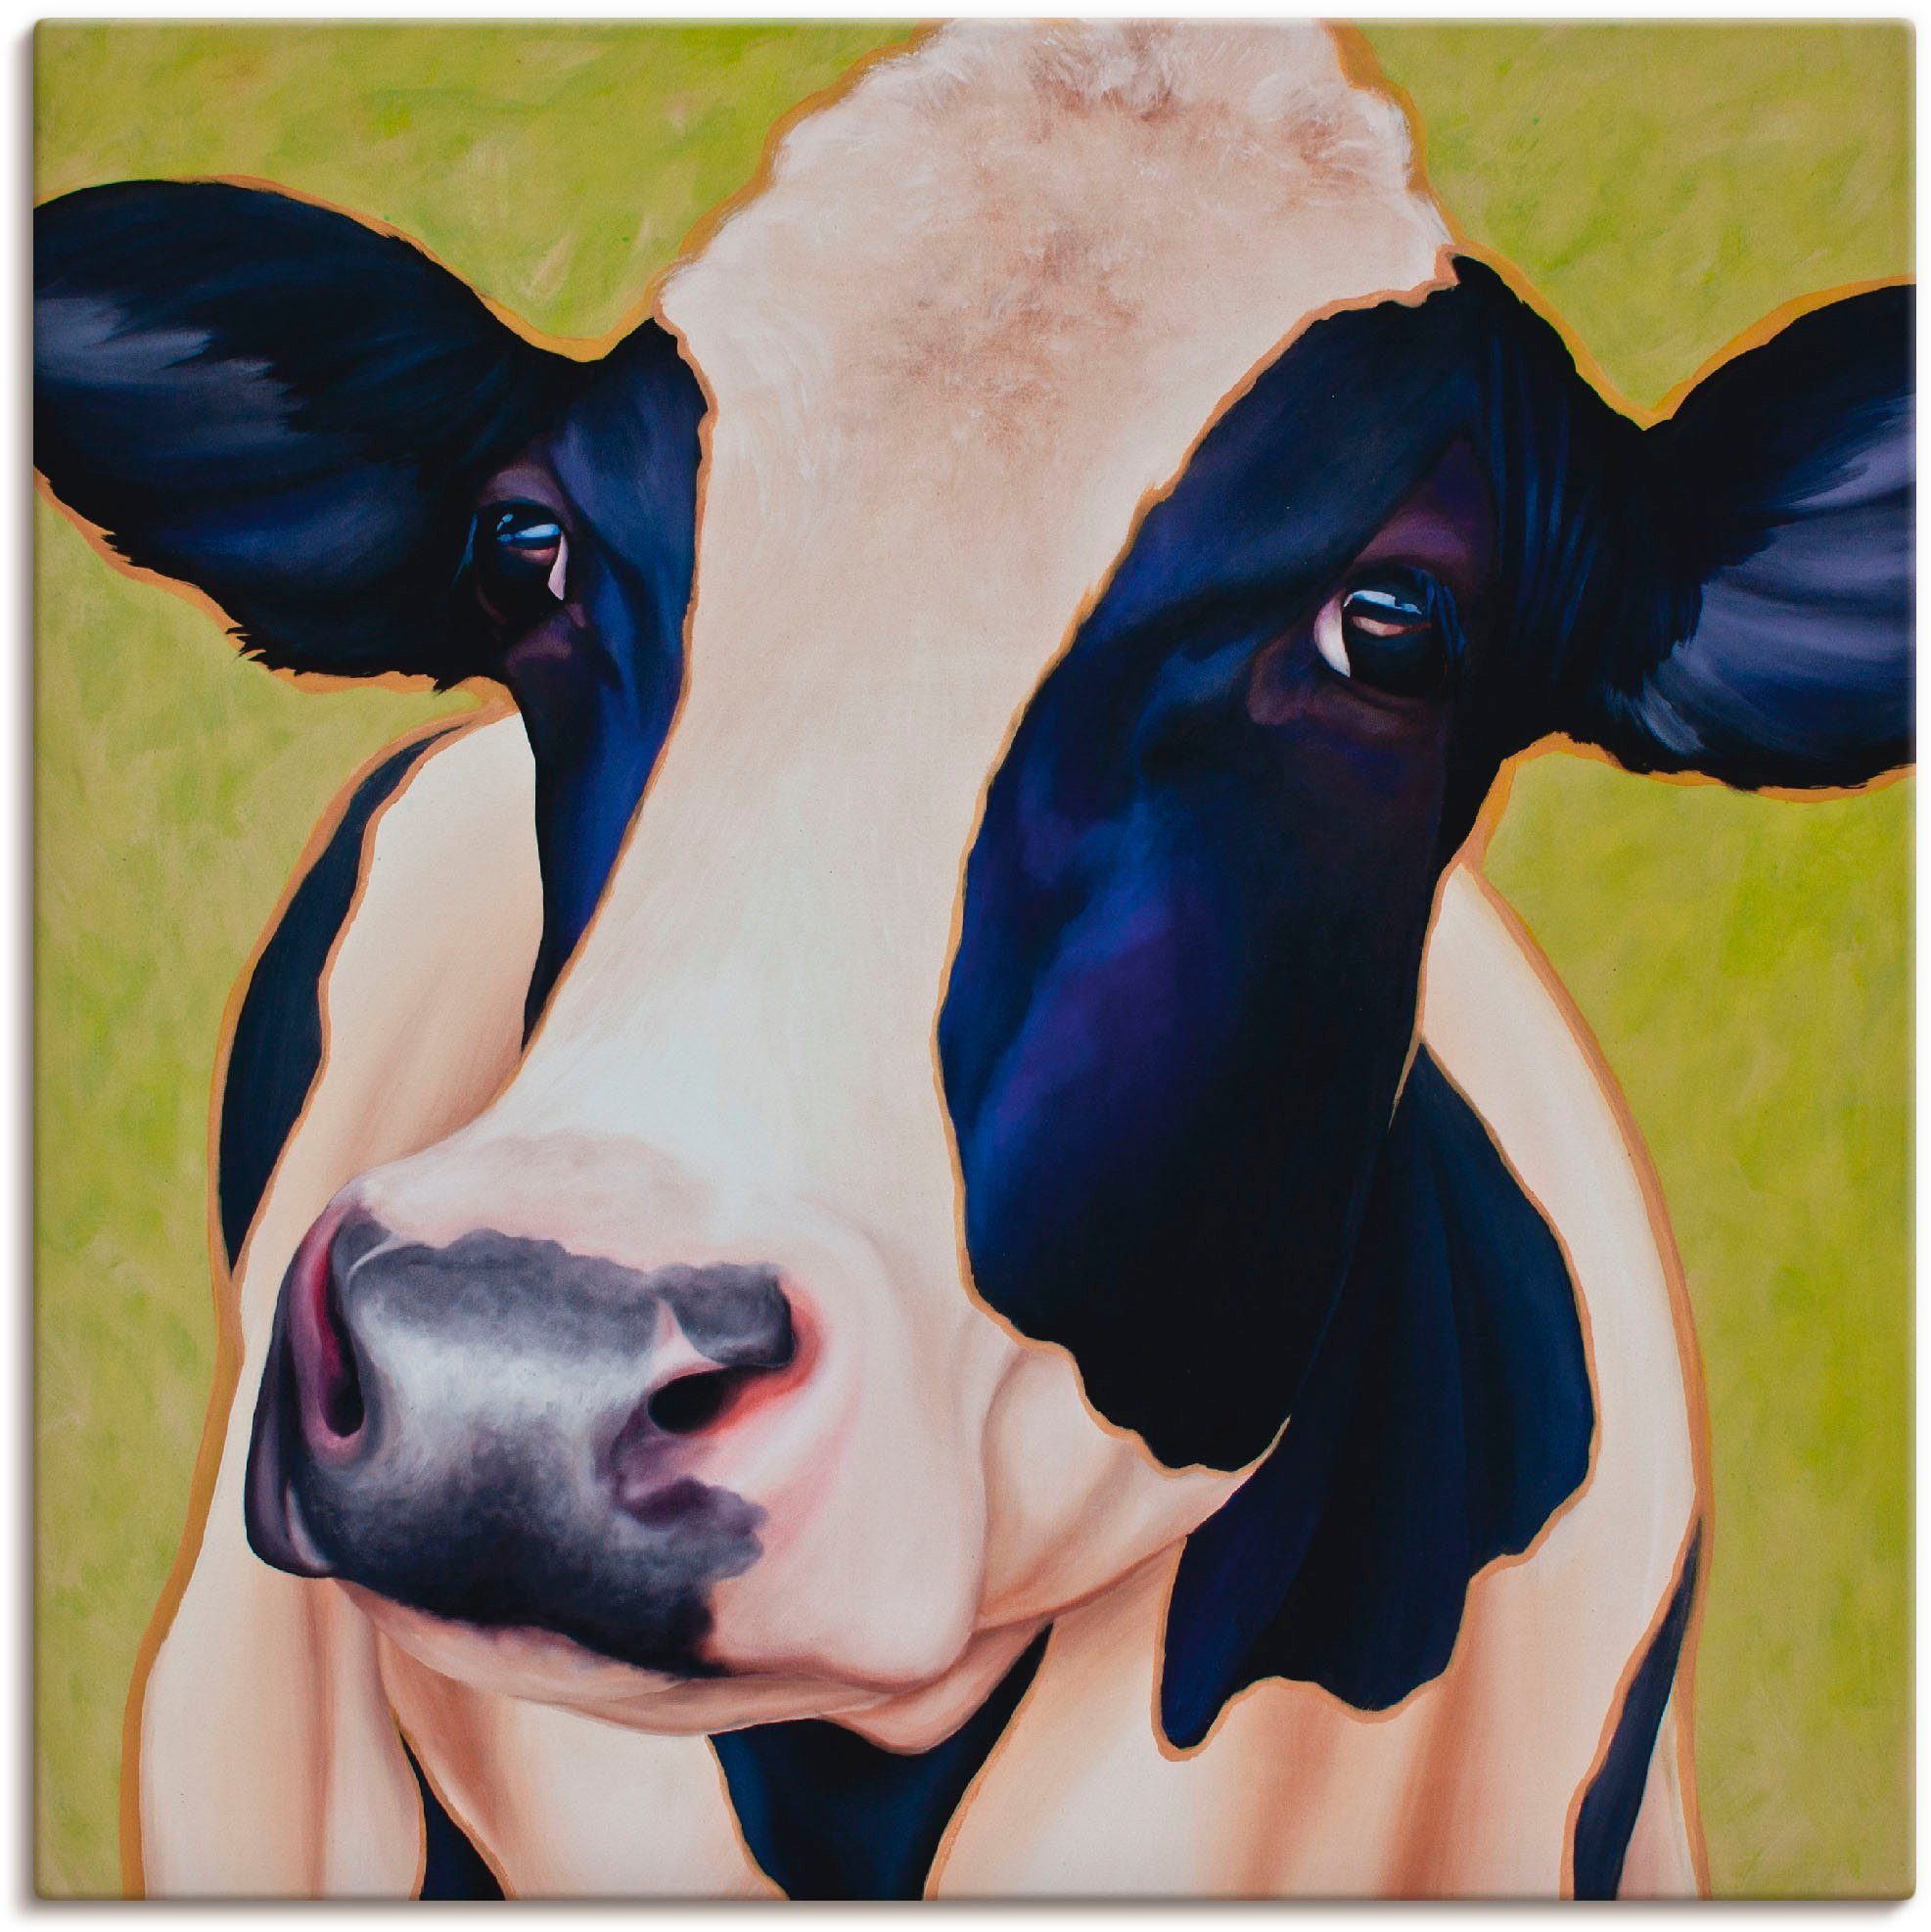 St), versch. Wandaufkleber in oder als Kuh (1 Leinwandbild, Poster Haustiere Wandbild Paula, Artland Größen